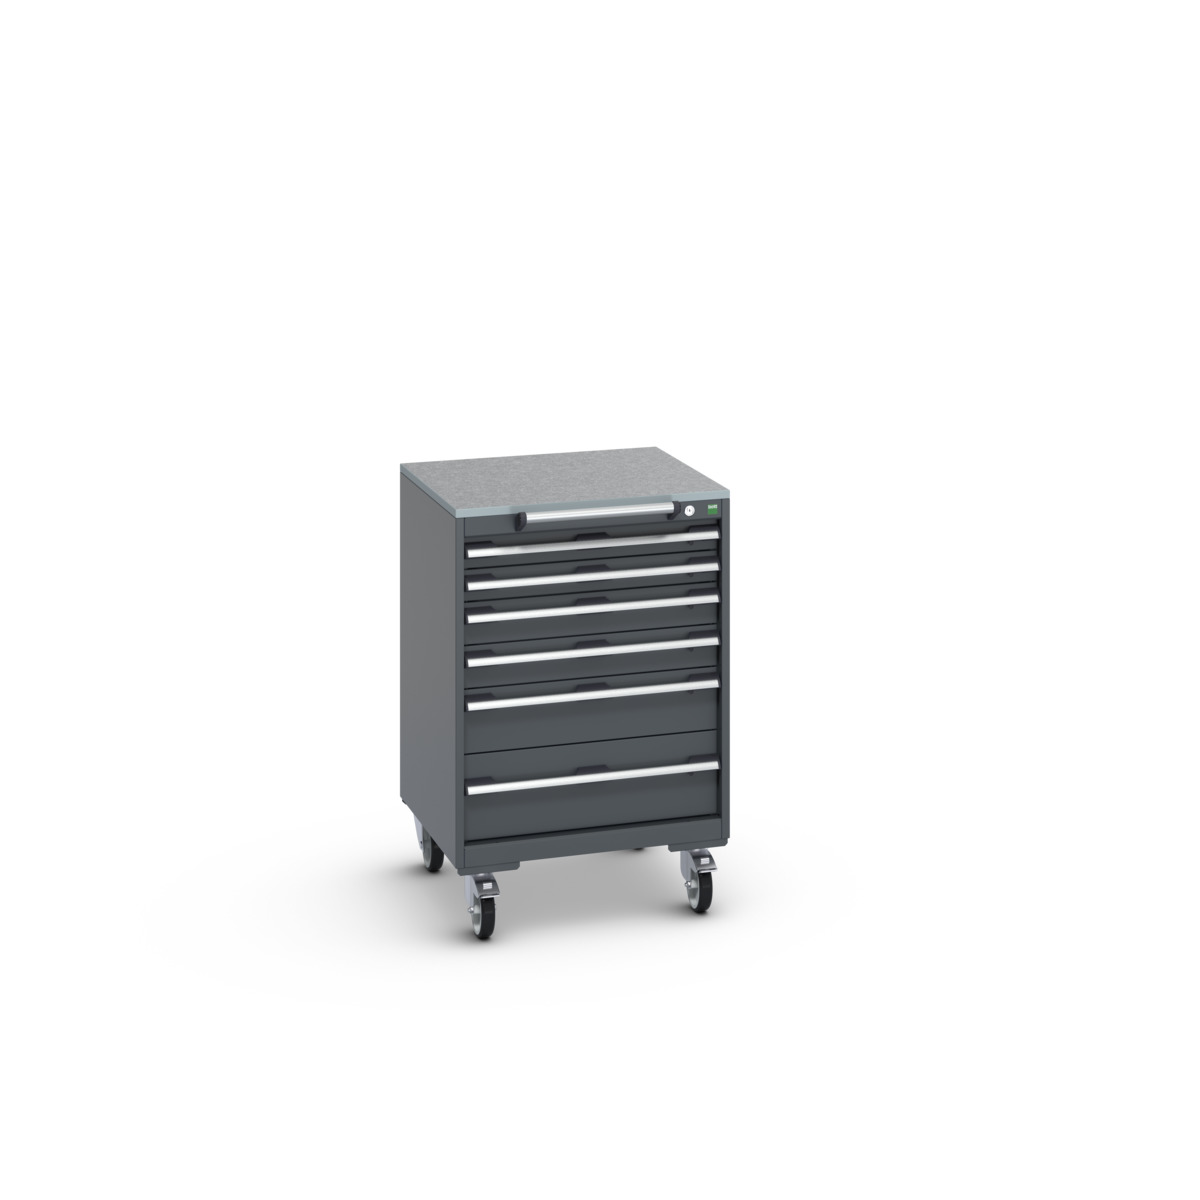 40402152.77V - cubio mobile cabinet